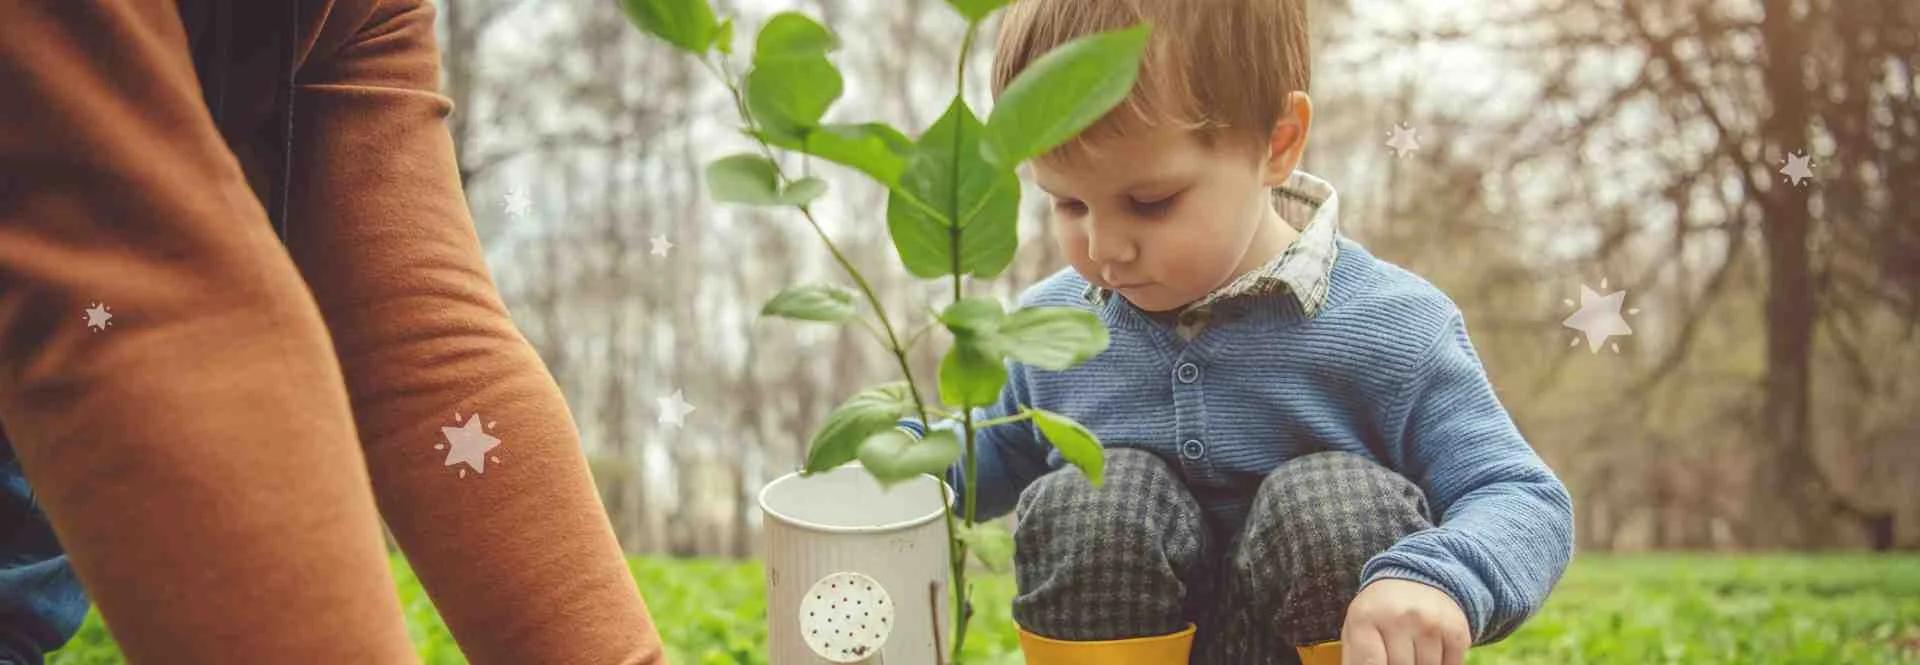 The Benefits of Gardening for Preschoolers